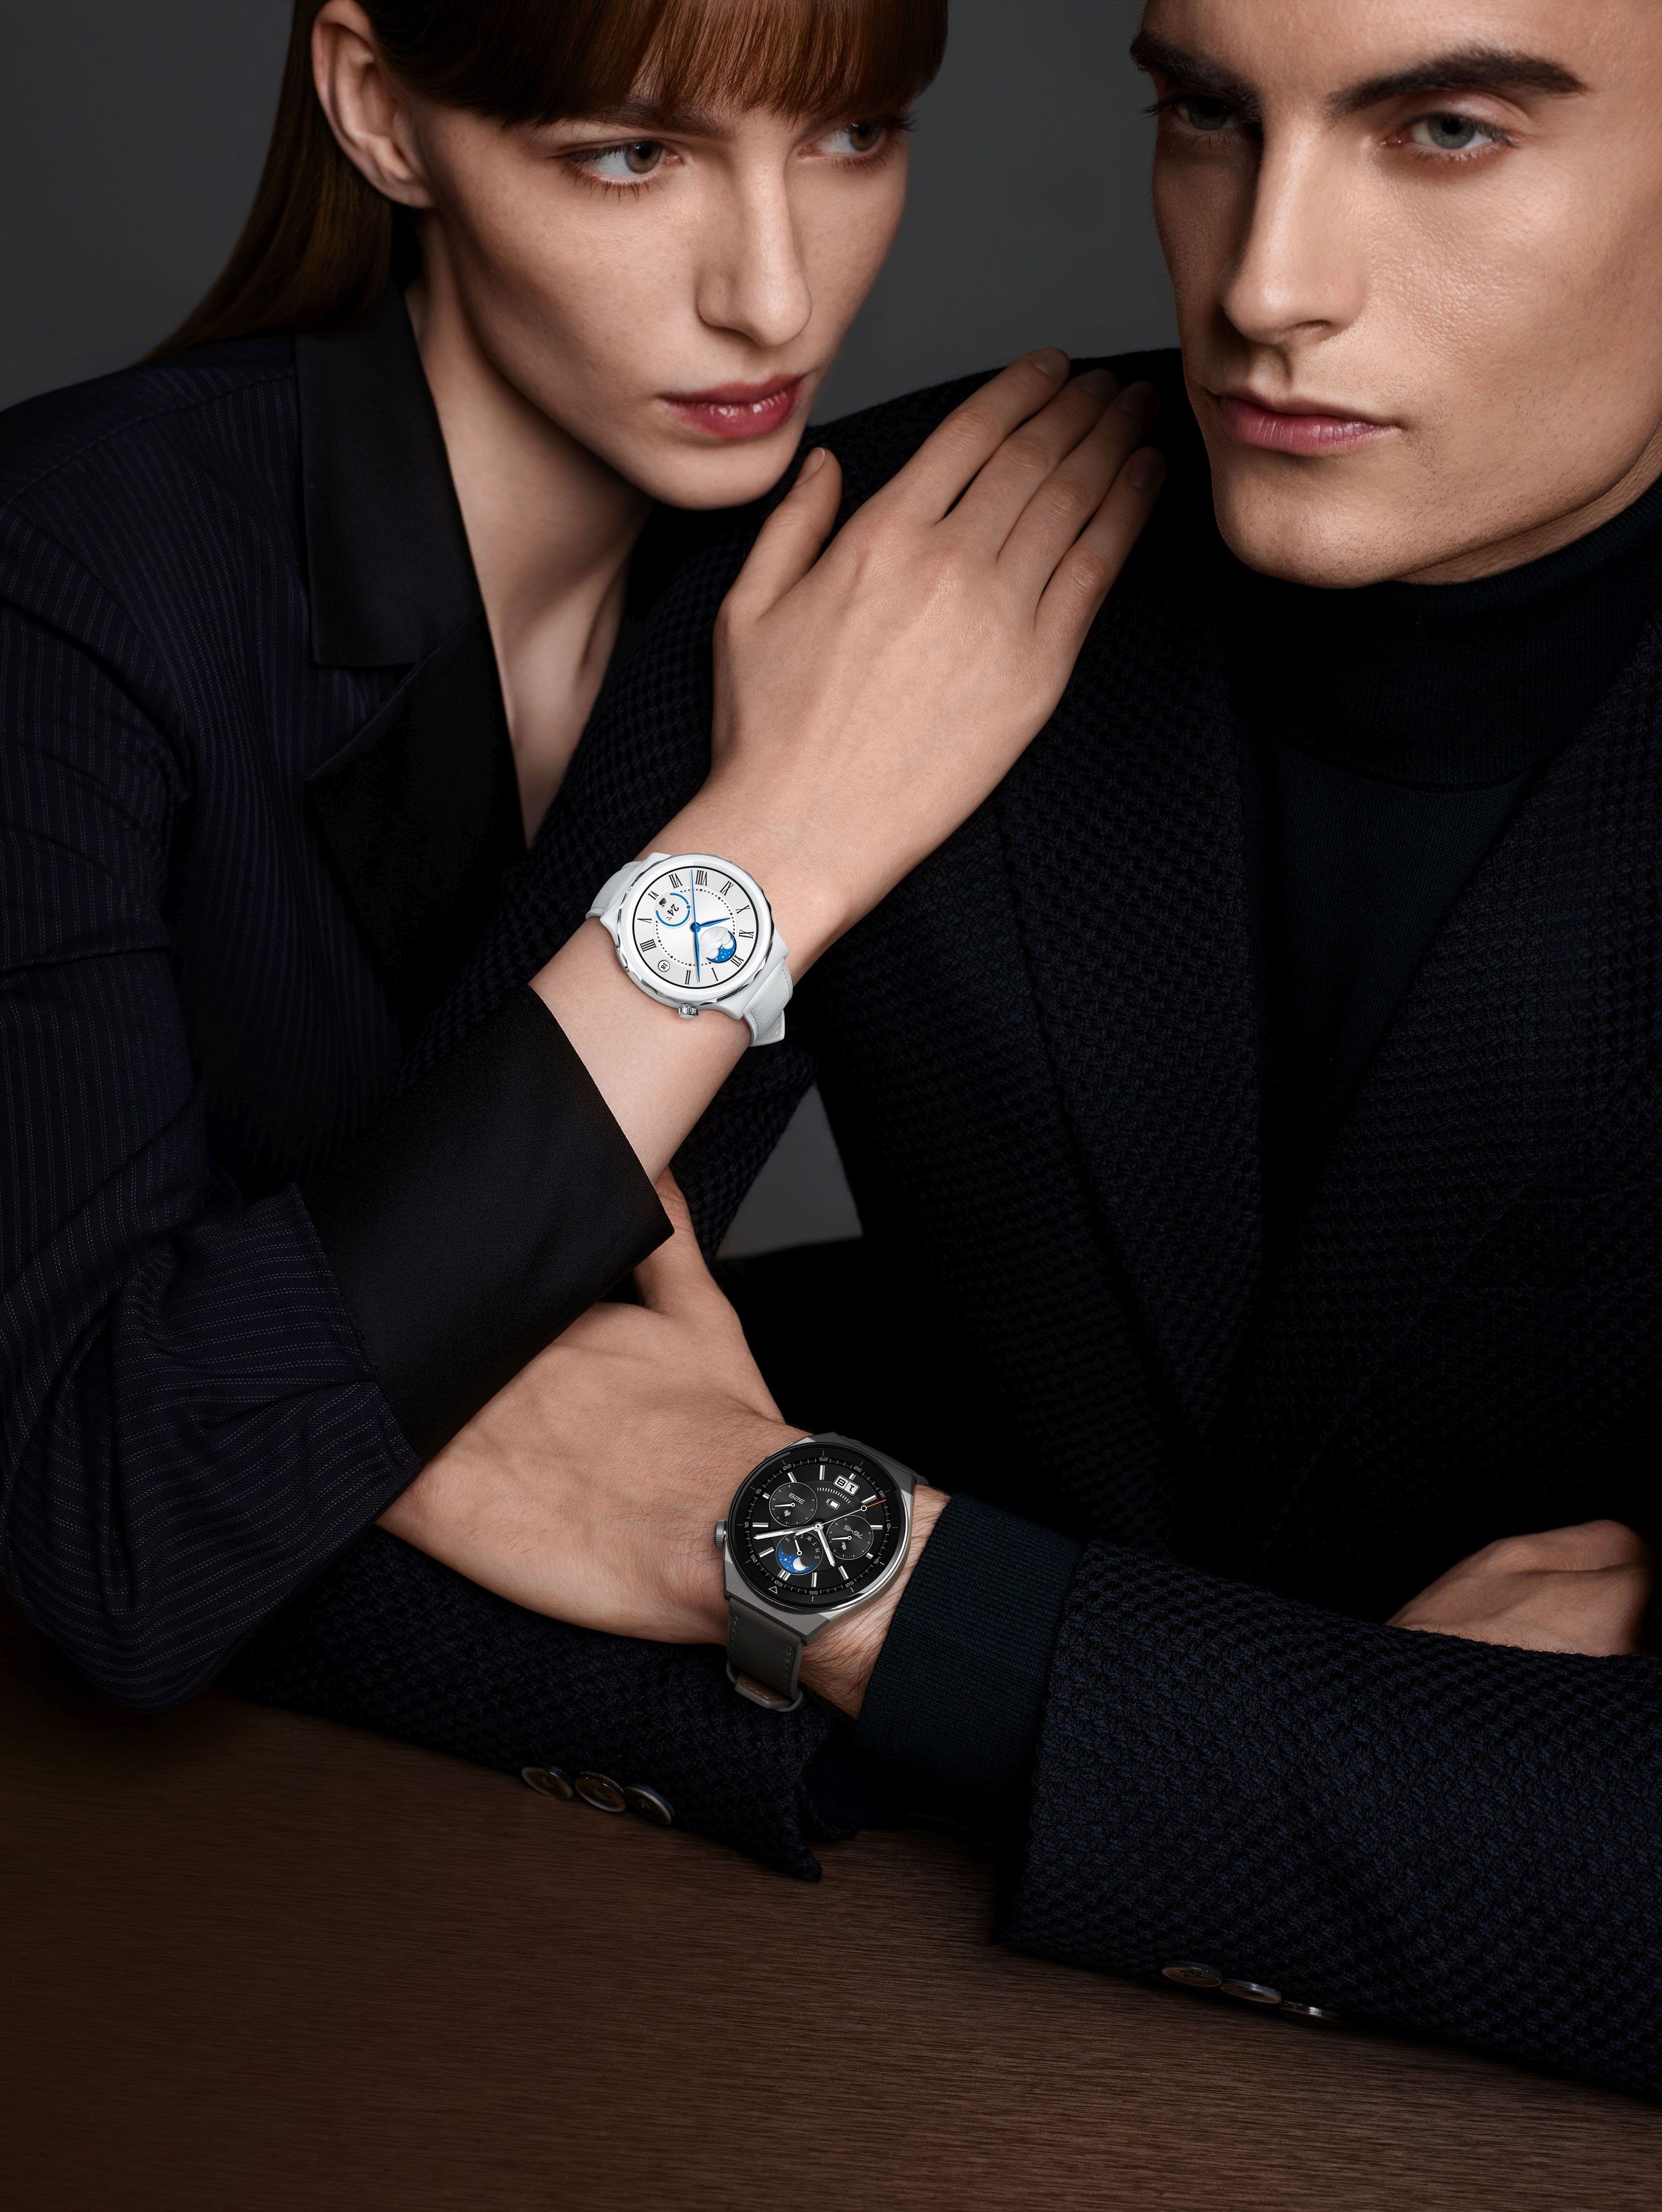 Huawei Watch GT3 3 (3,63 46mm grau Grau Herstellergarantie Pro Smartwatch | Jahre cm/1,43 Zoll)